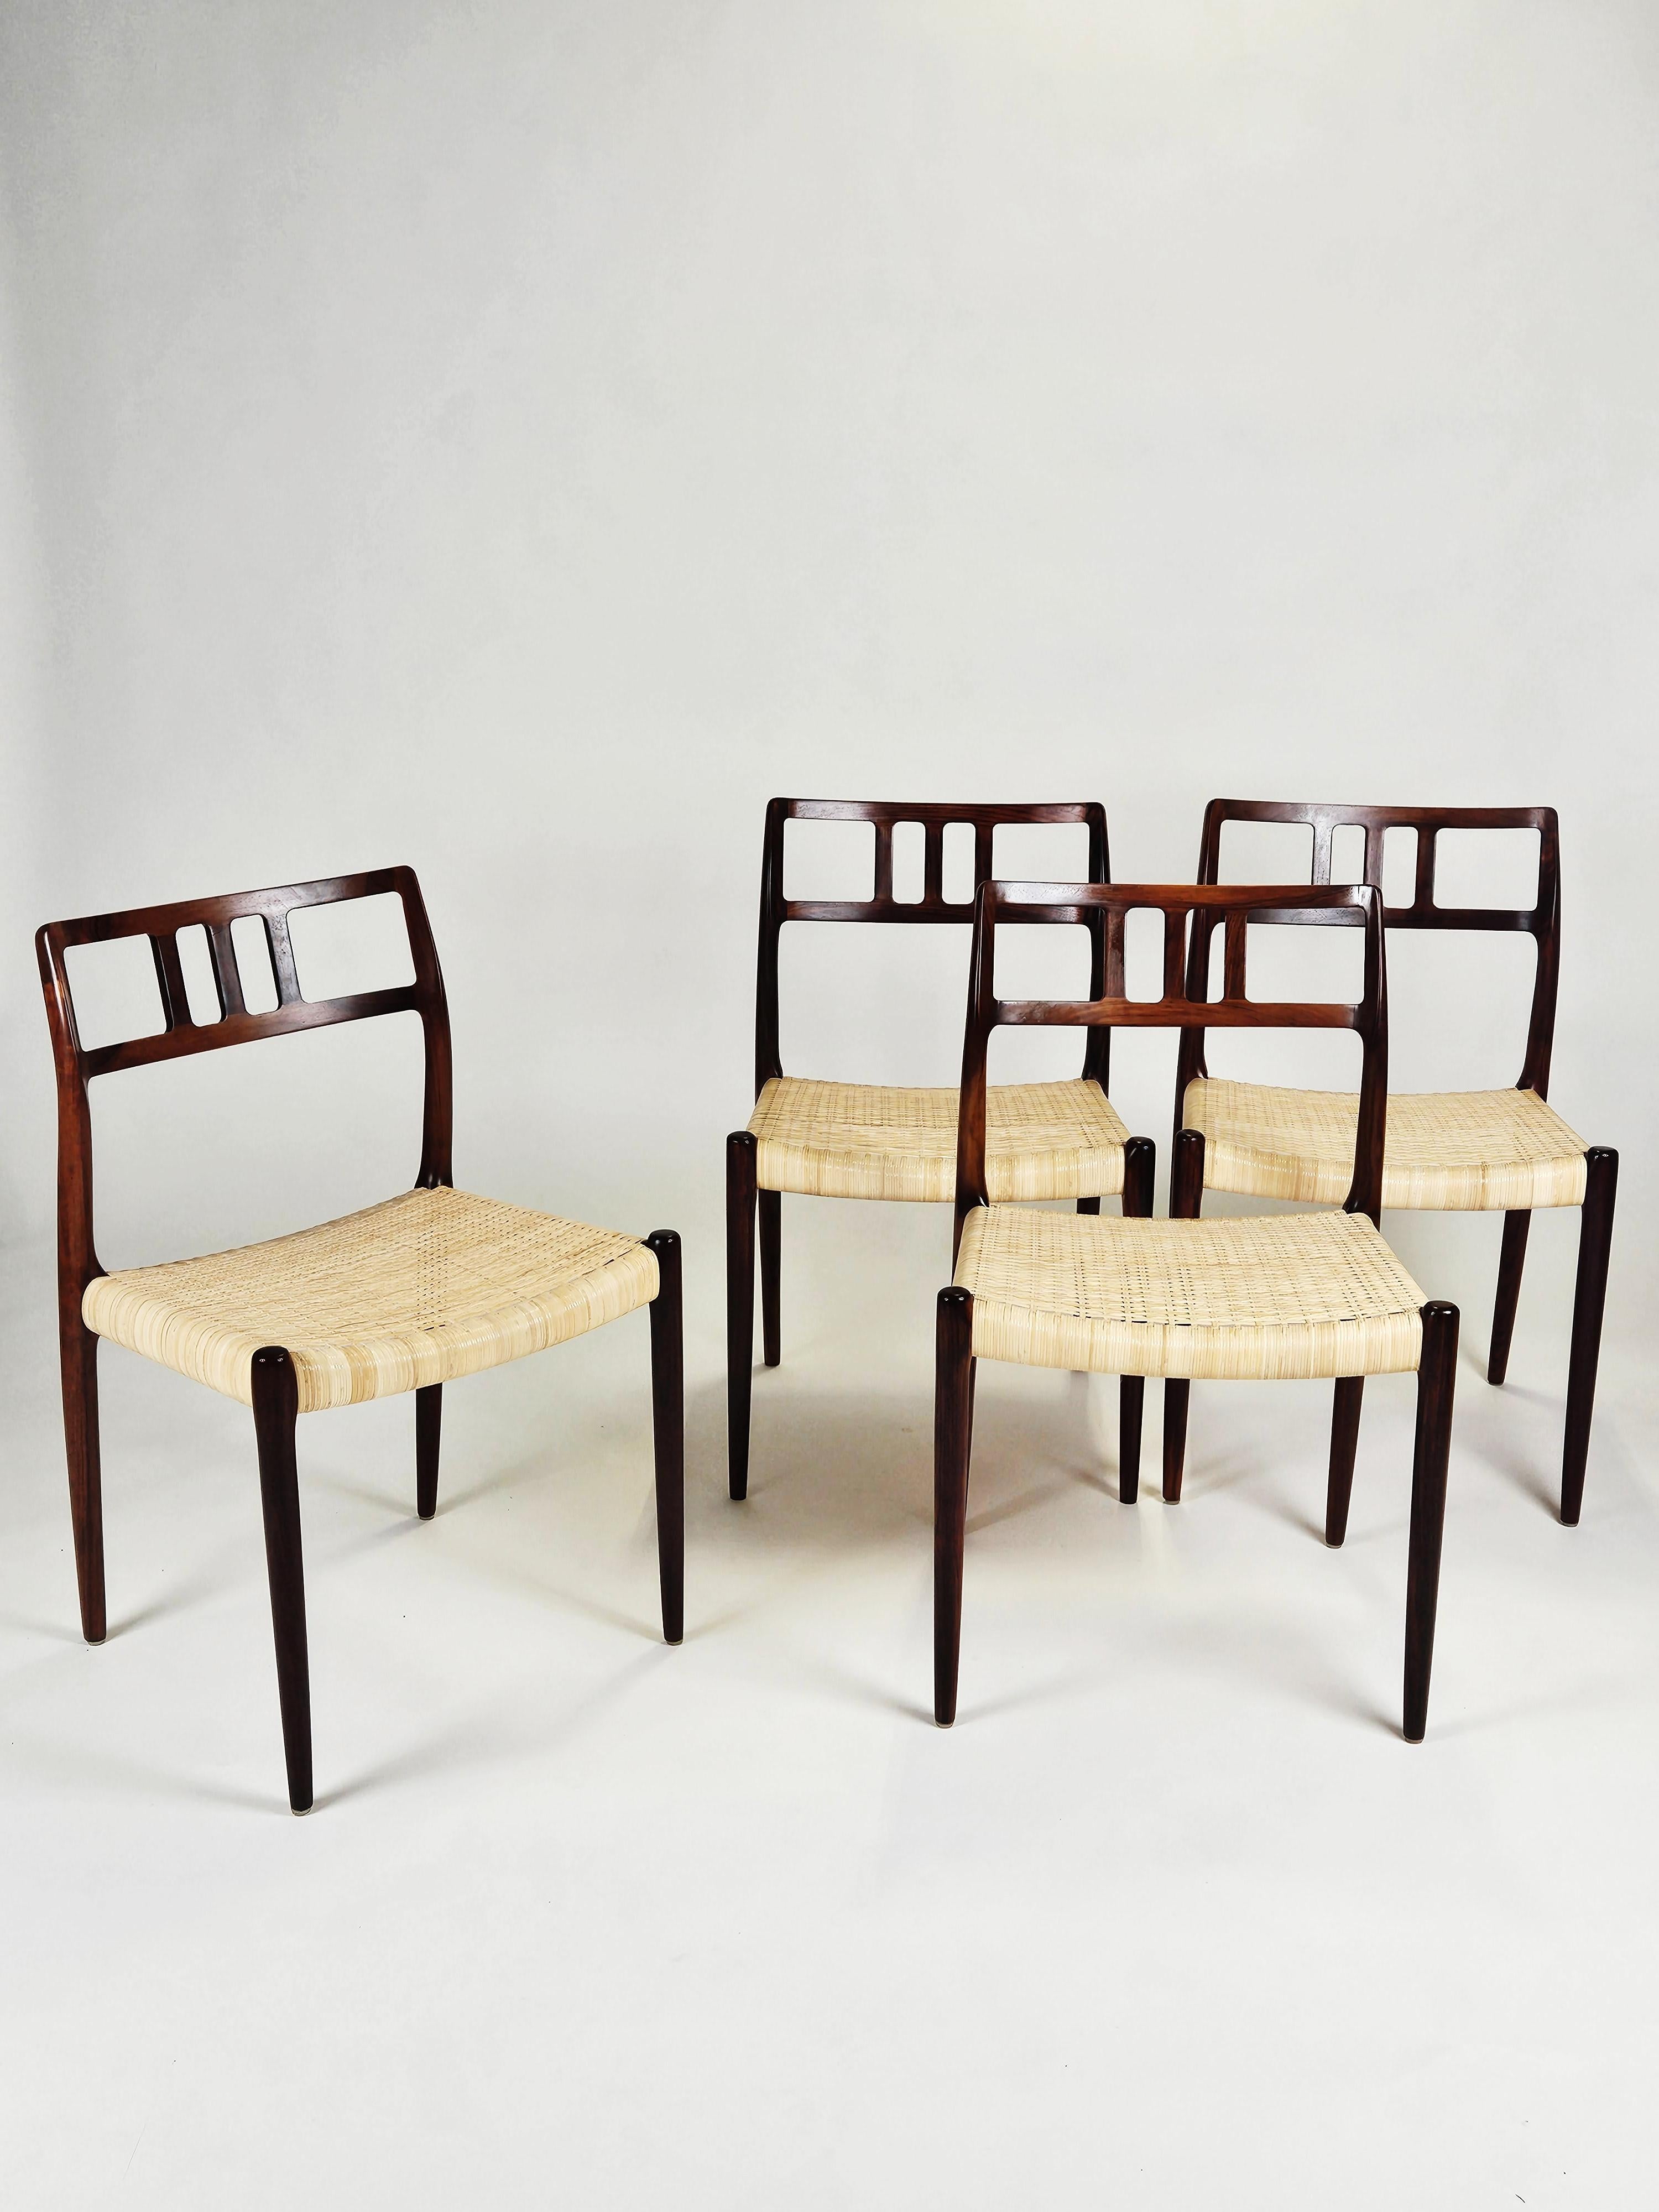 Bigli de 14 chaises de salle à manger modèle 79 conçu par Niels O. Møller. Produit par I.L Møllers møbelfabrik au Danemark dans les années 1960.

Fabriqué en bois de rose avec des sièges en canne tressée. 

Très bon état vintage. 